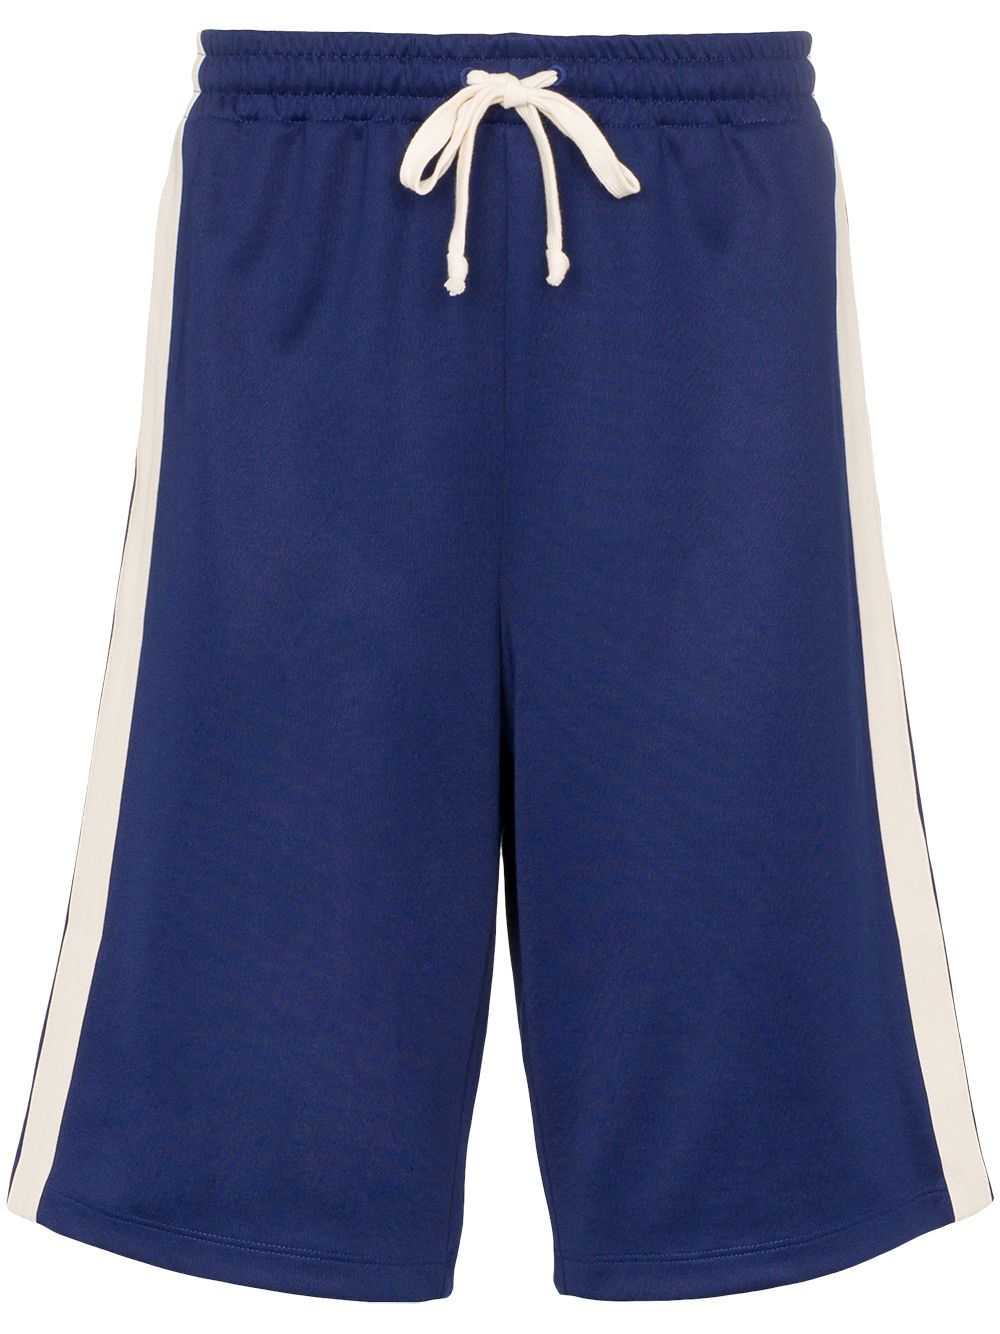 фото Gucci спортивные шорты с контрастными полосками и логотипом GG